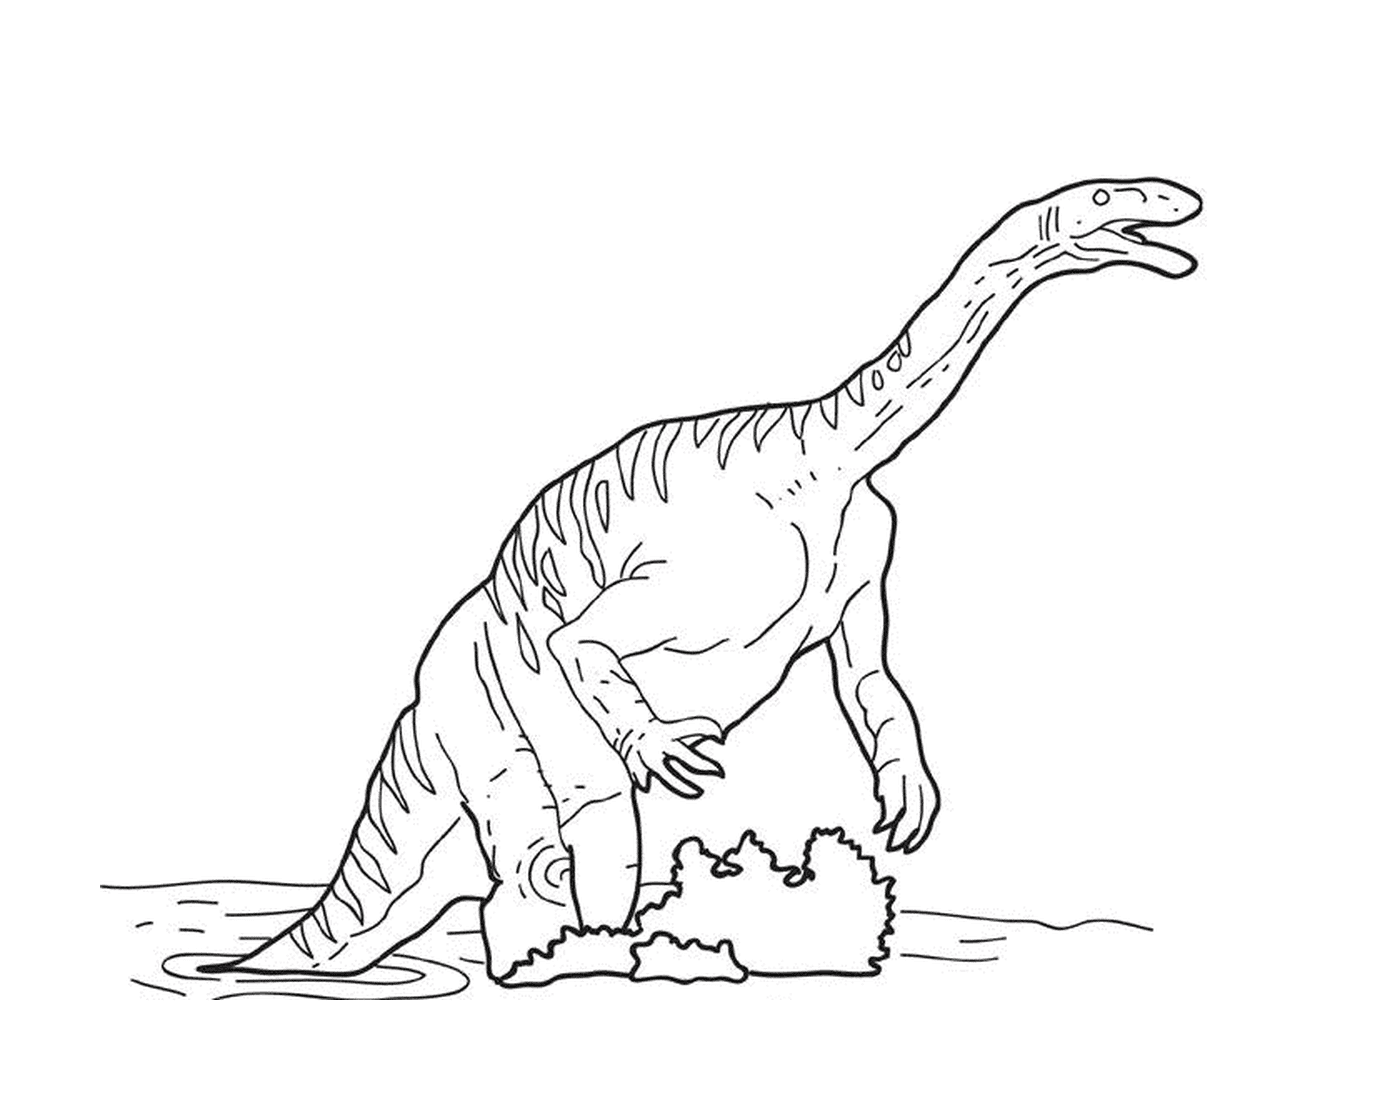  一个在水中玩耍的恐龙 